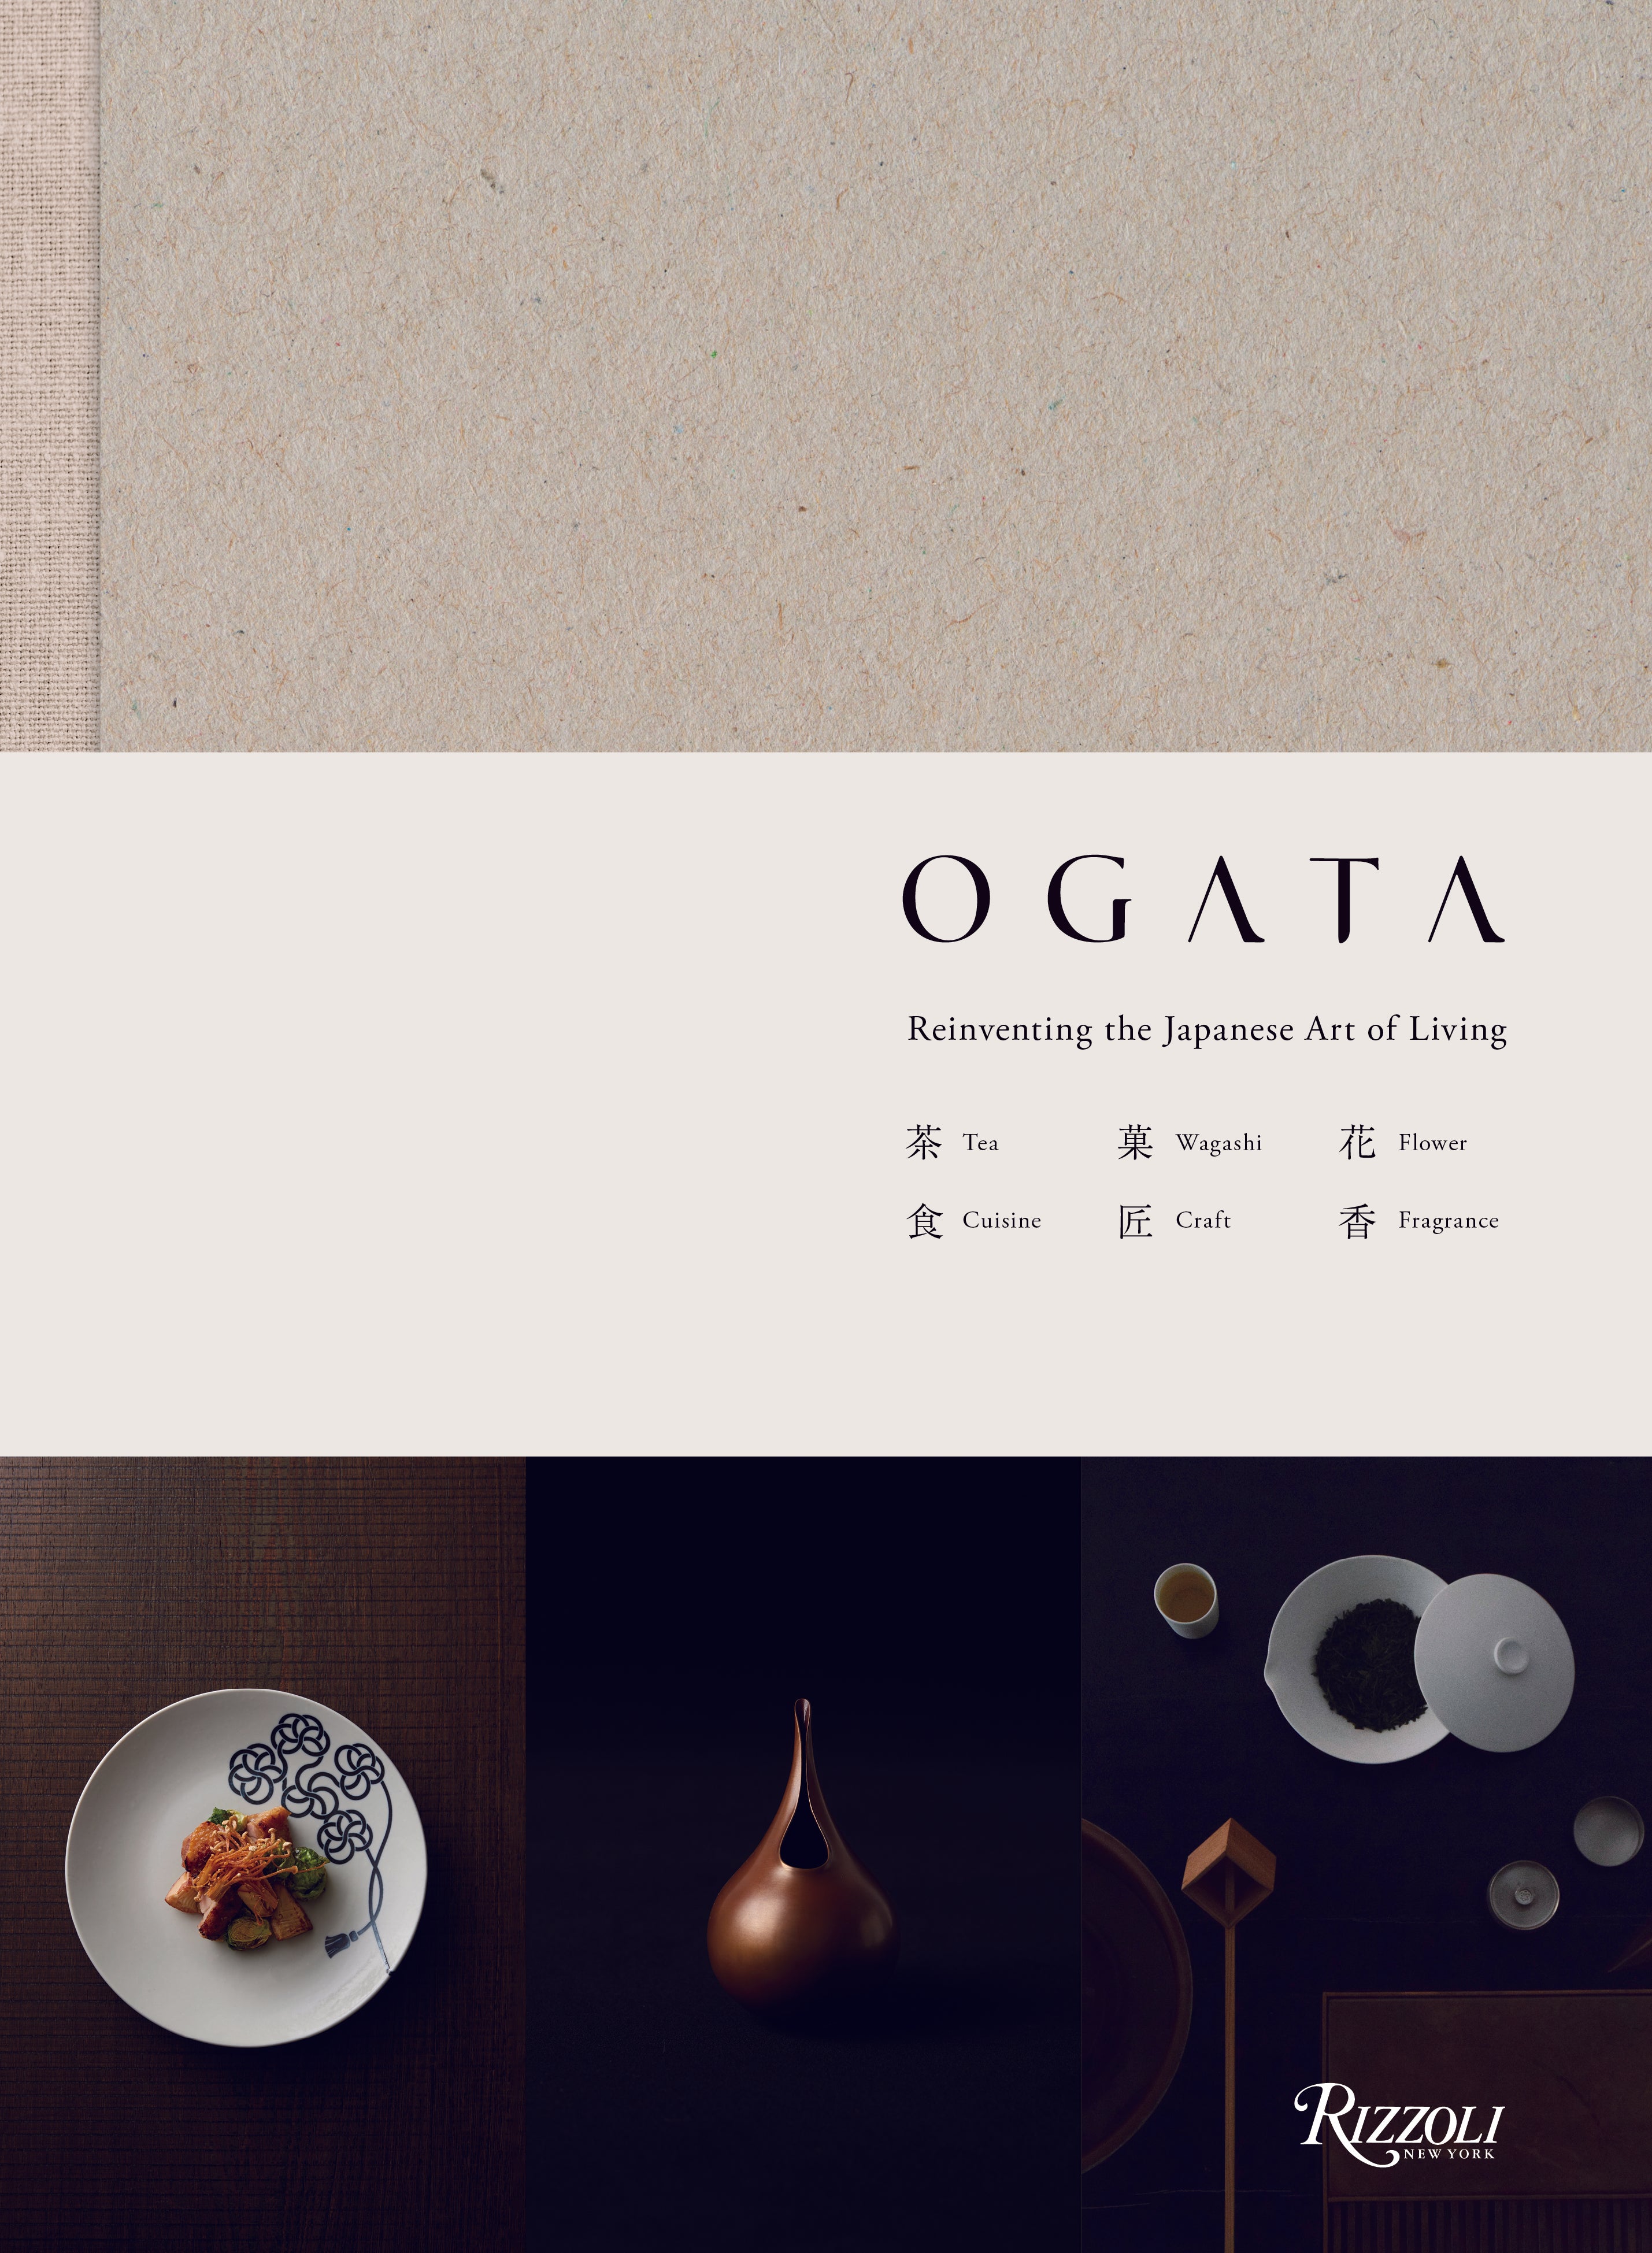 Ogata - Reinventing the Japanese Art of Living